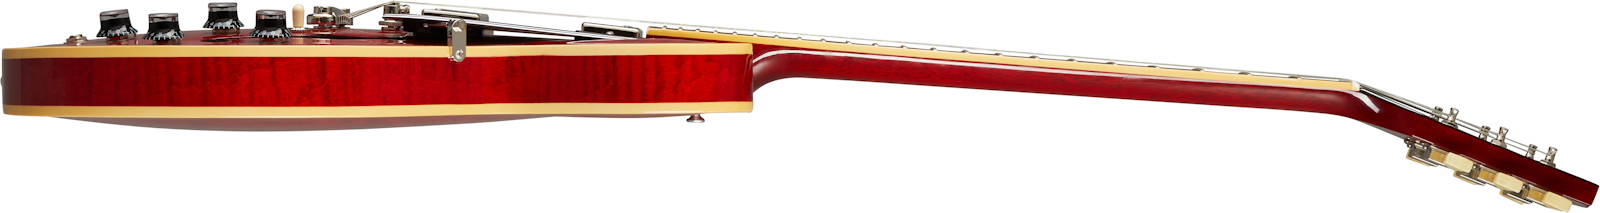 Gibson Es-335 Figured Lh Original Gaucher 2h Ht Rw - Sixties Cherry - Linkshandige elektrische gitaar - Variation 3